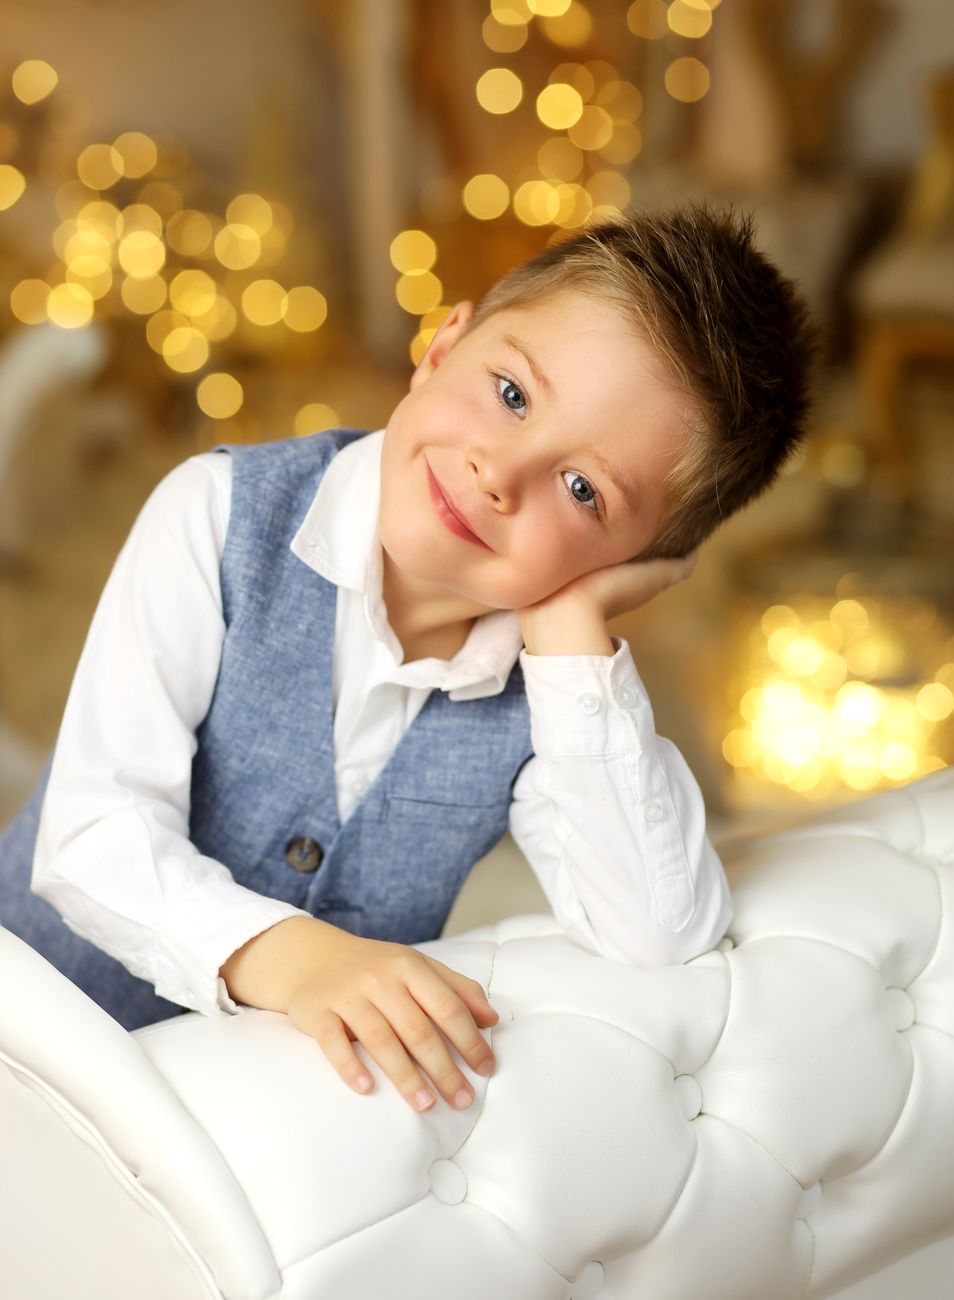 Luxusní vánoční fotografie chlapce s rekvizitami v ateliéru | © Fotoprome.cz